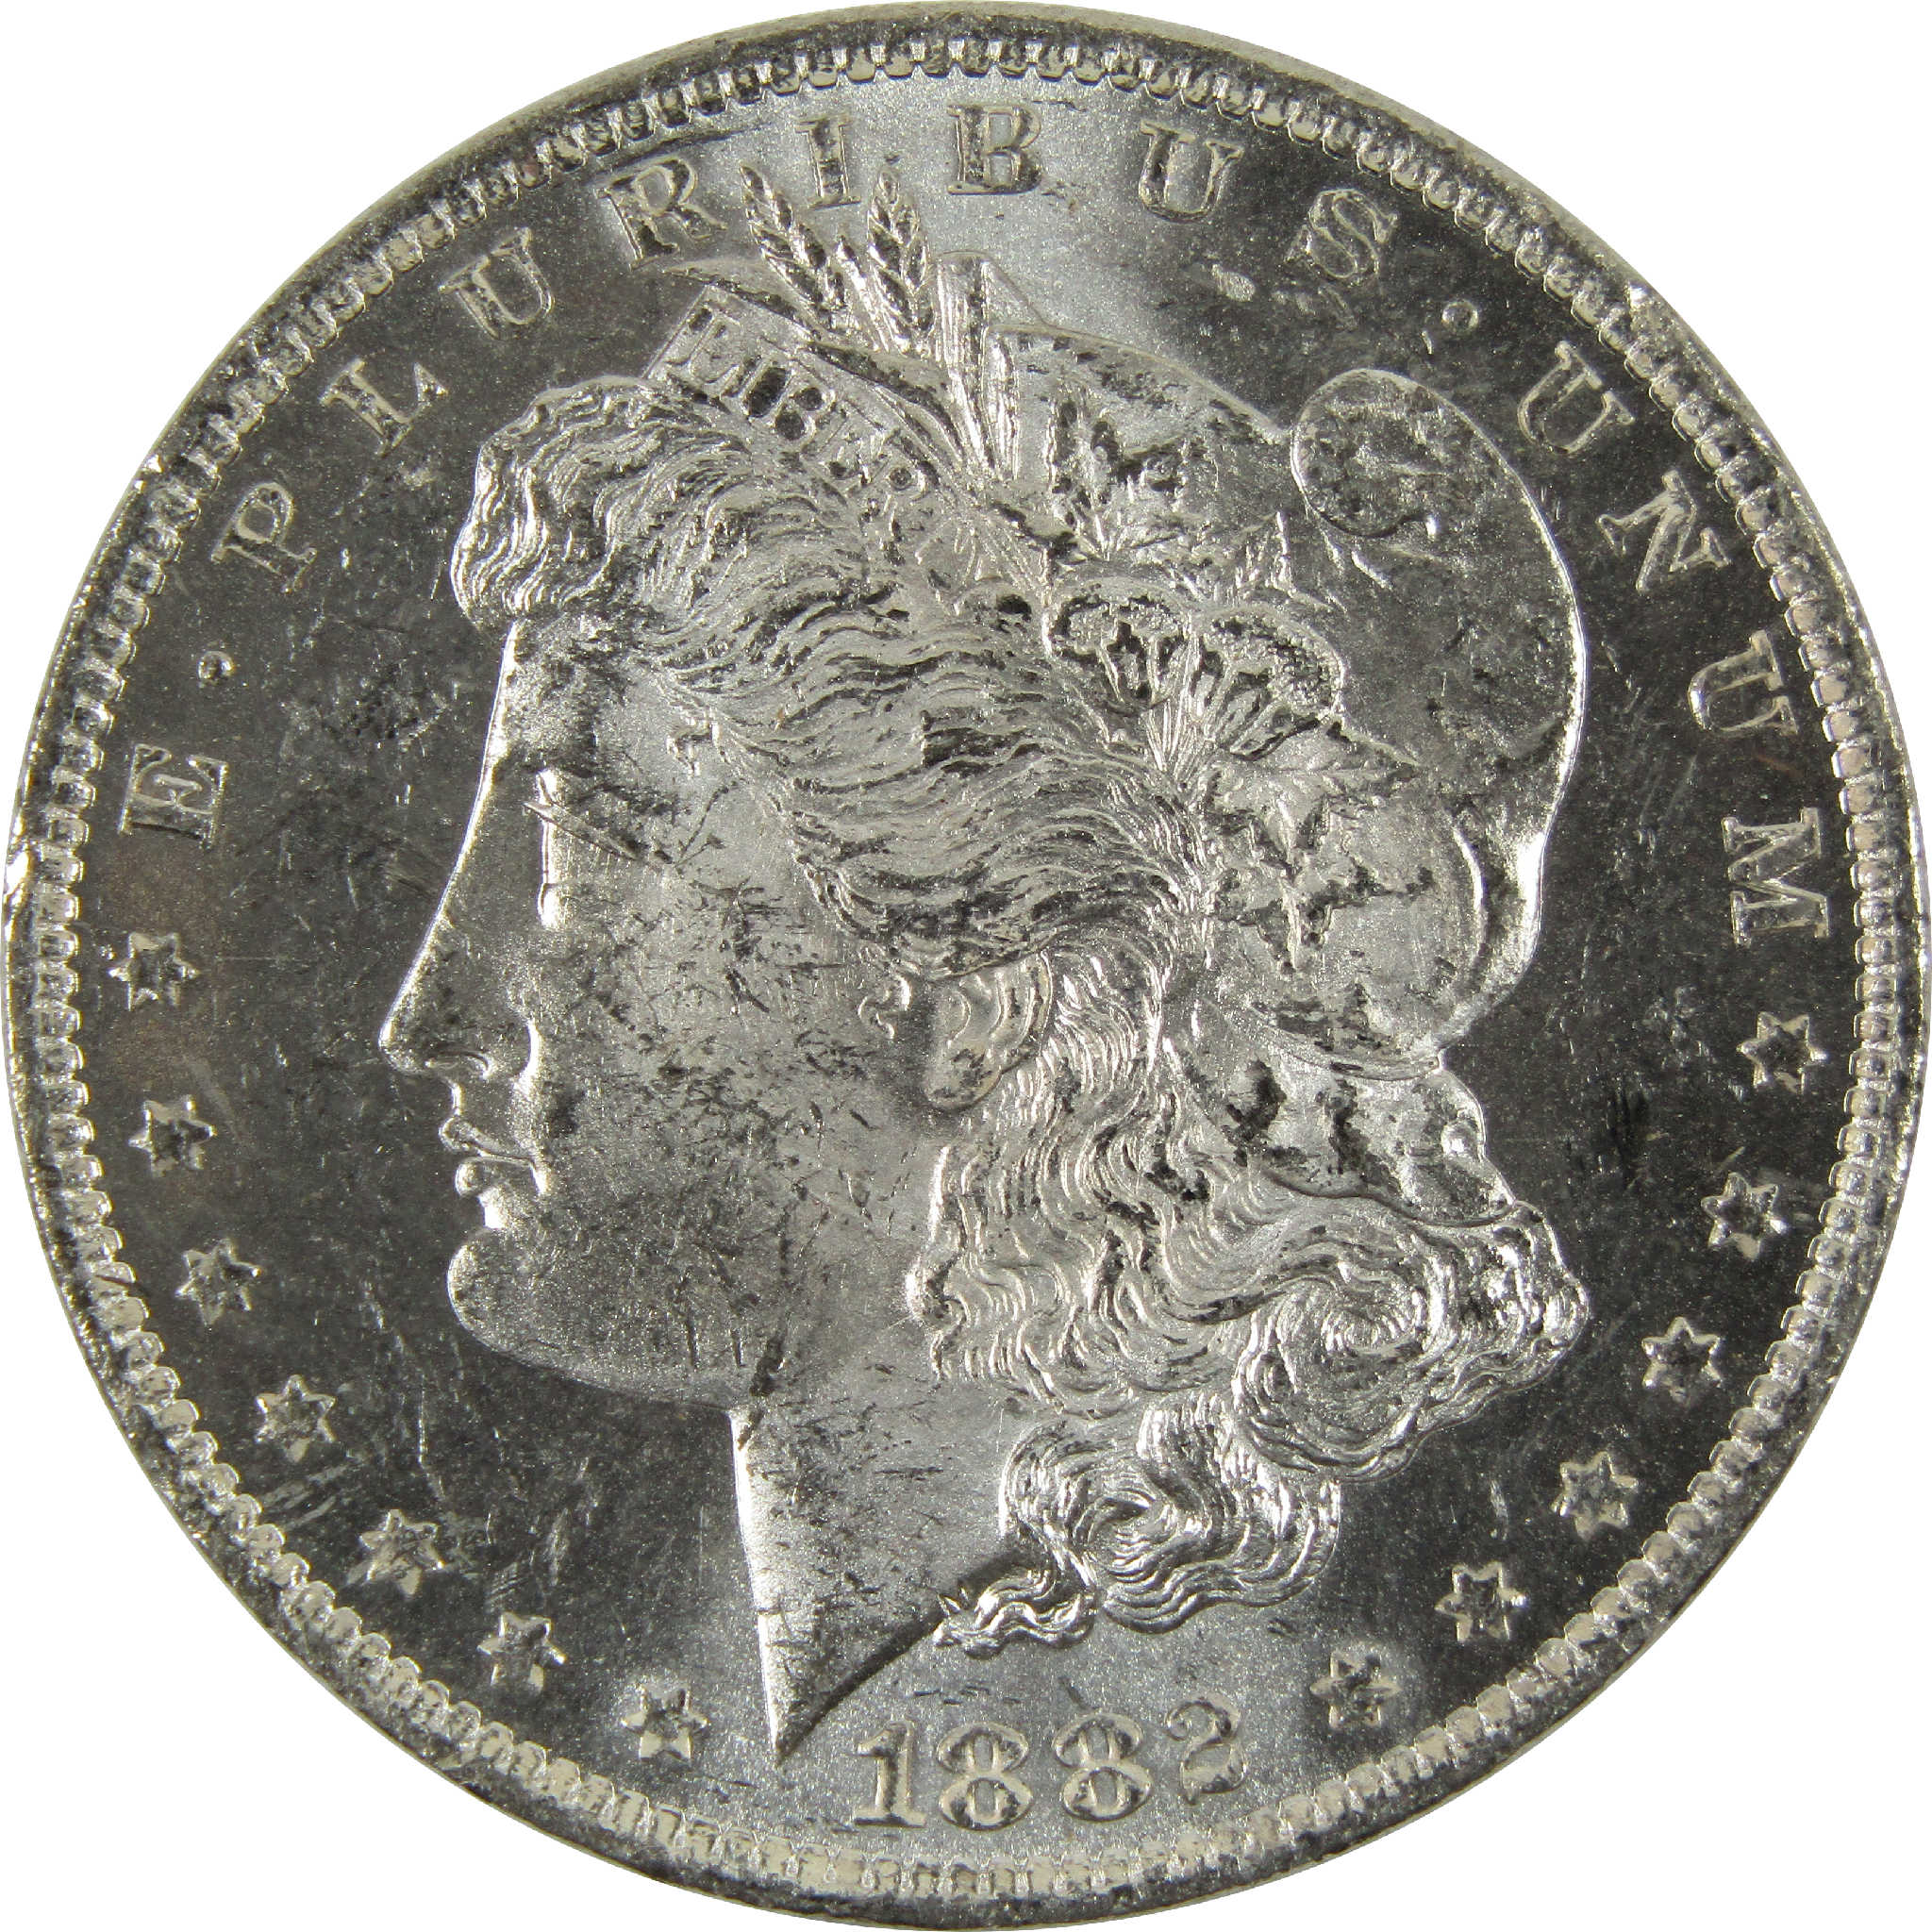 1882 O Morgan Dollar BU Uncirculated 90% Silver $1 Coin SKU:I8905 - Morgan coin - Morgan silver dollar - Morgan silver dollar for sale - Profile Coins &amp; Collectibles